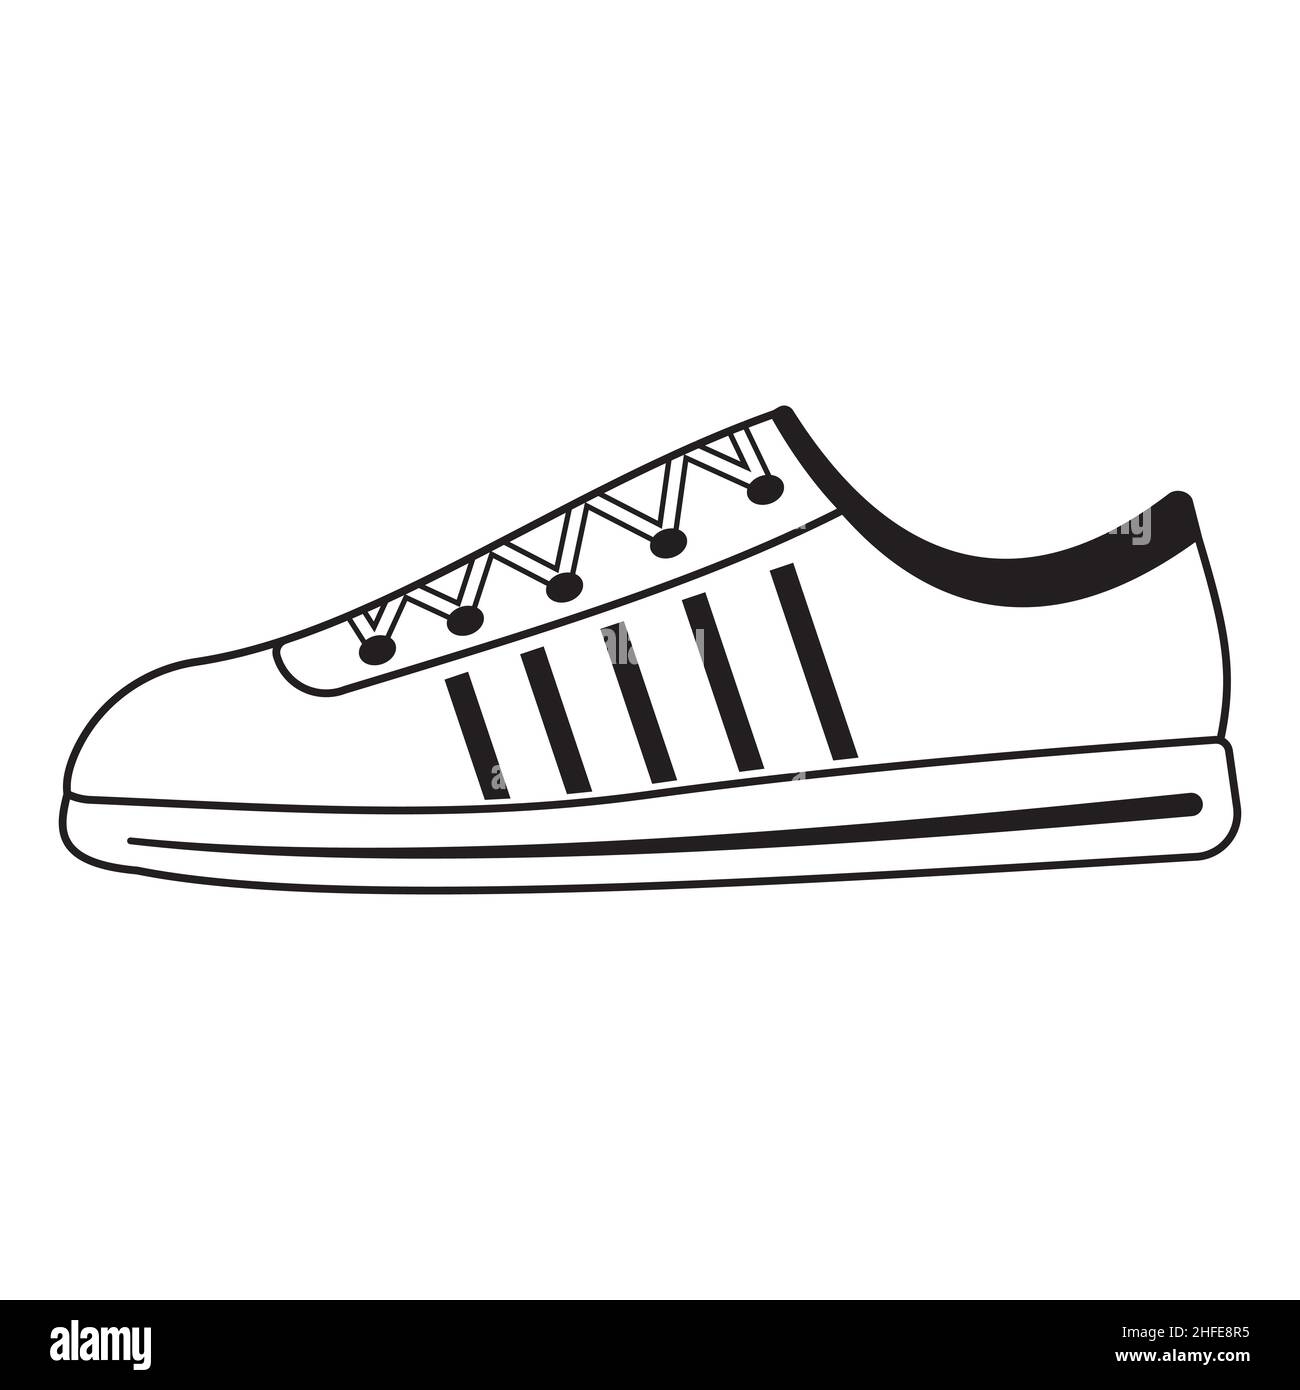 Chaussures de sport pour le sport, illustration vectorielle isolée avec contour noir et style doodle. Illustration de Vecteur